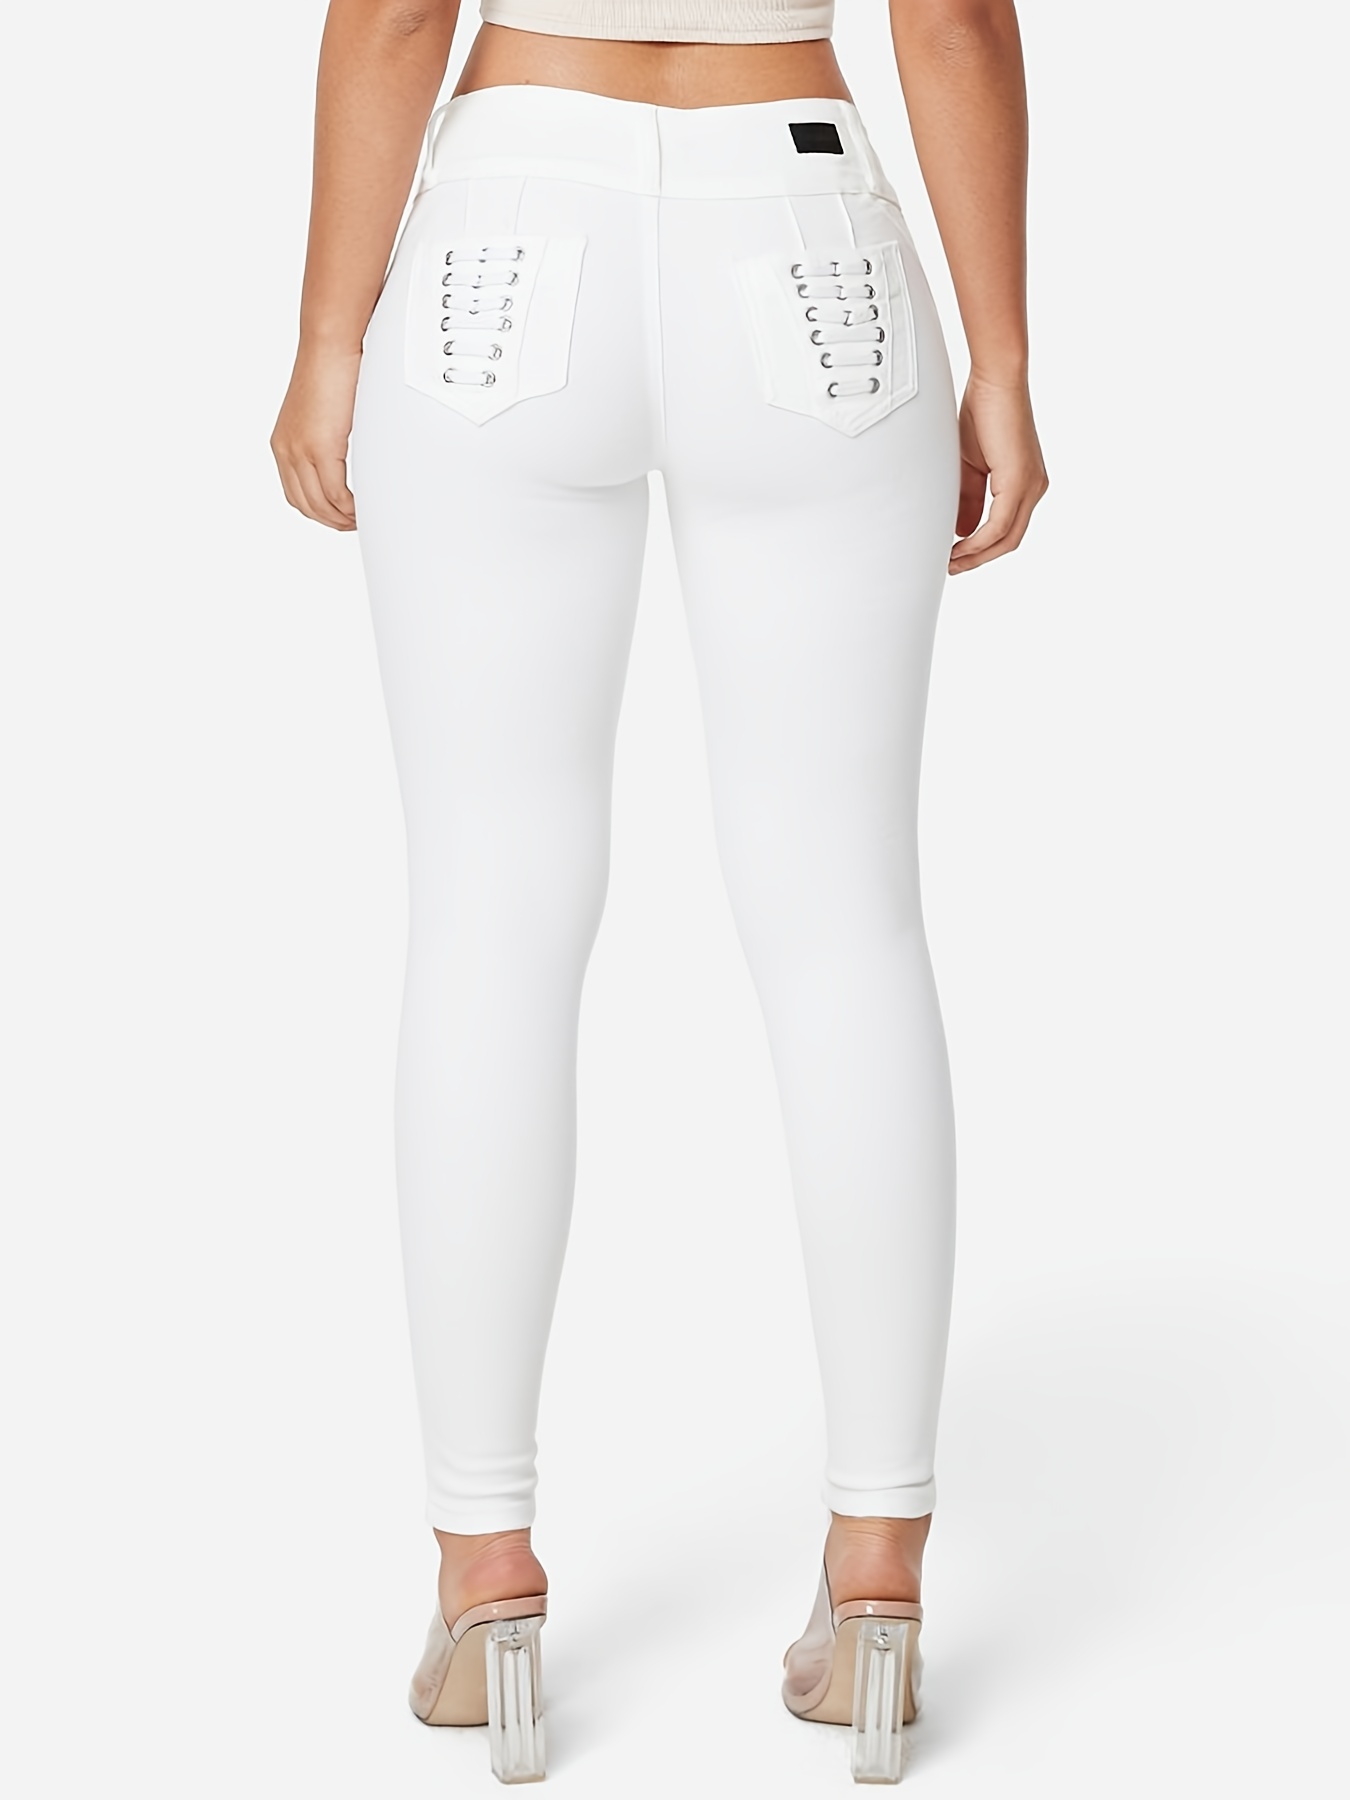 Jeans Ajustados Blancos Lisos, Pantalones De Mezclilla De Tiro Alto Con  Curvas Y Estiramiento Medio, Jeans Y Ropa De Mezclilla Para Mujer